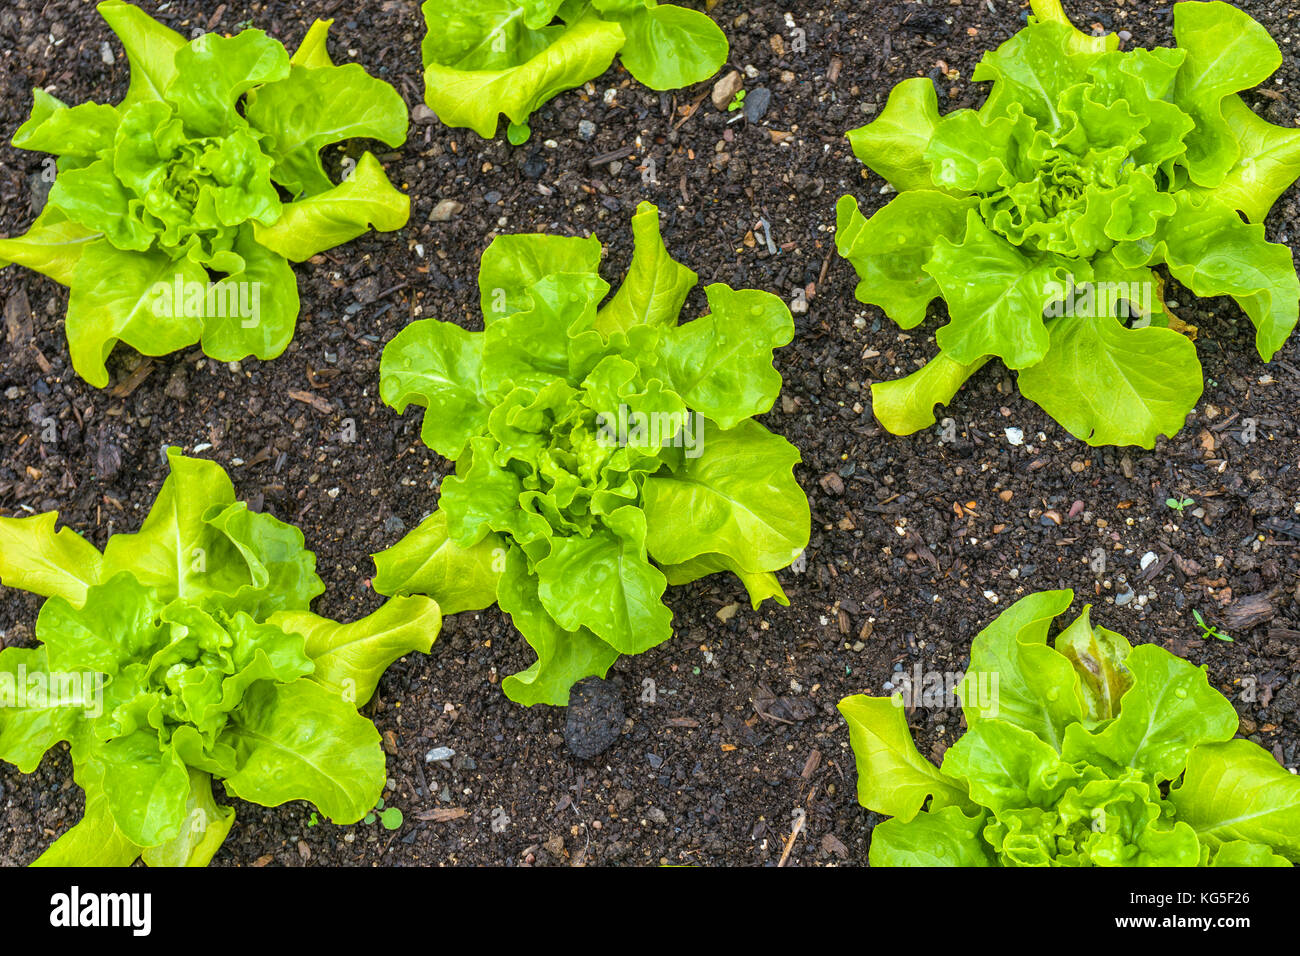 Foglia verde le lattughe sono un gruppo di cultivar di lattuga con foglie verdi. Foto Stock